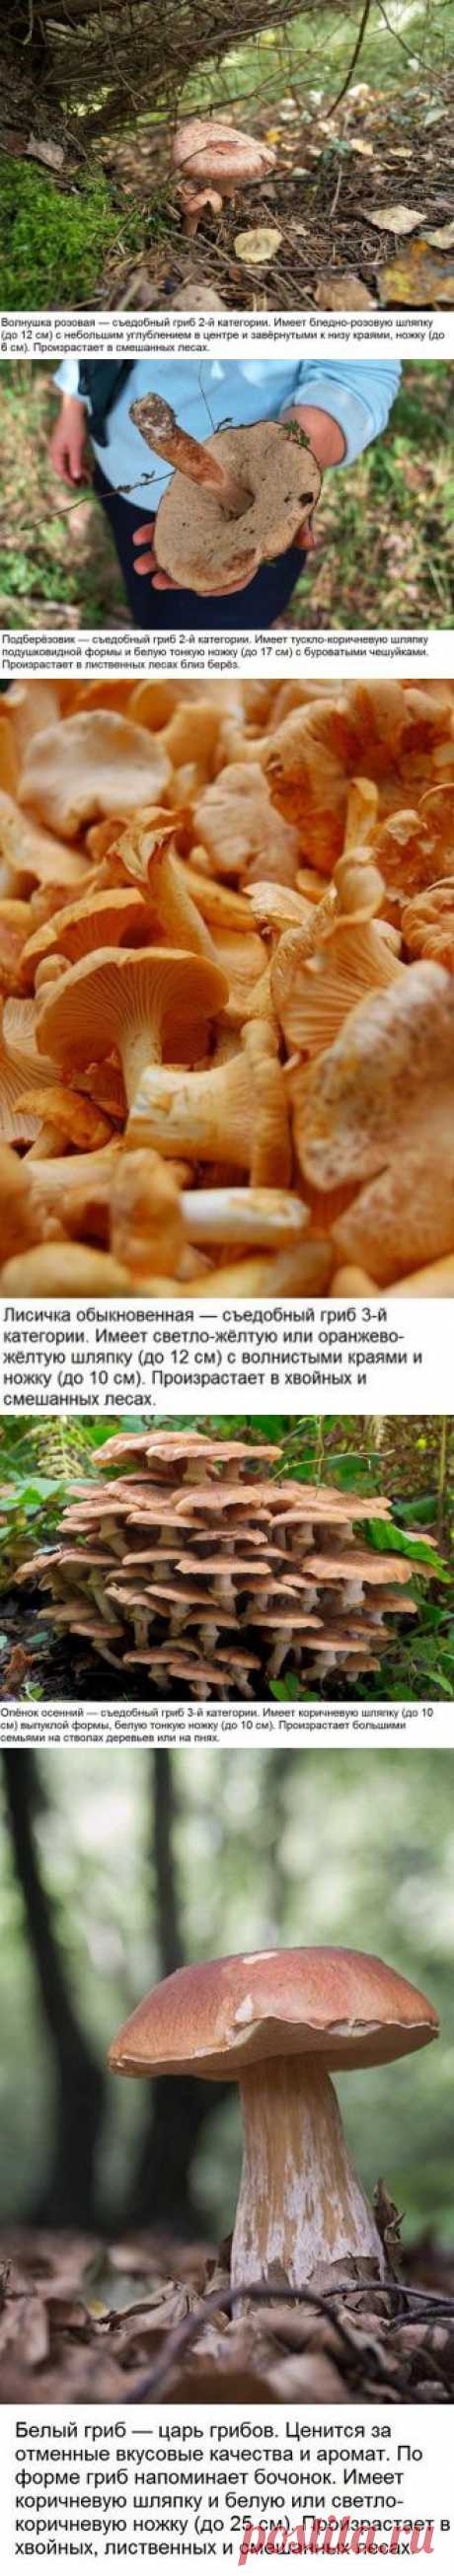 Мини-гид: 10 съедобных грибов | Хитрости Жизни